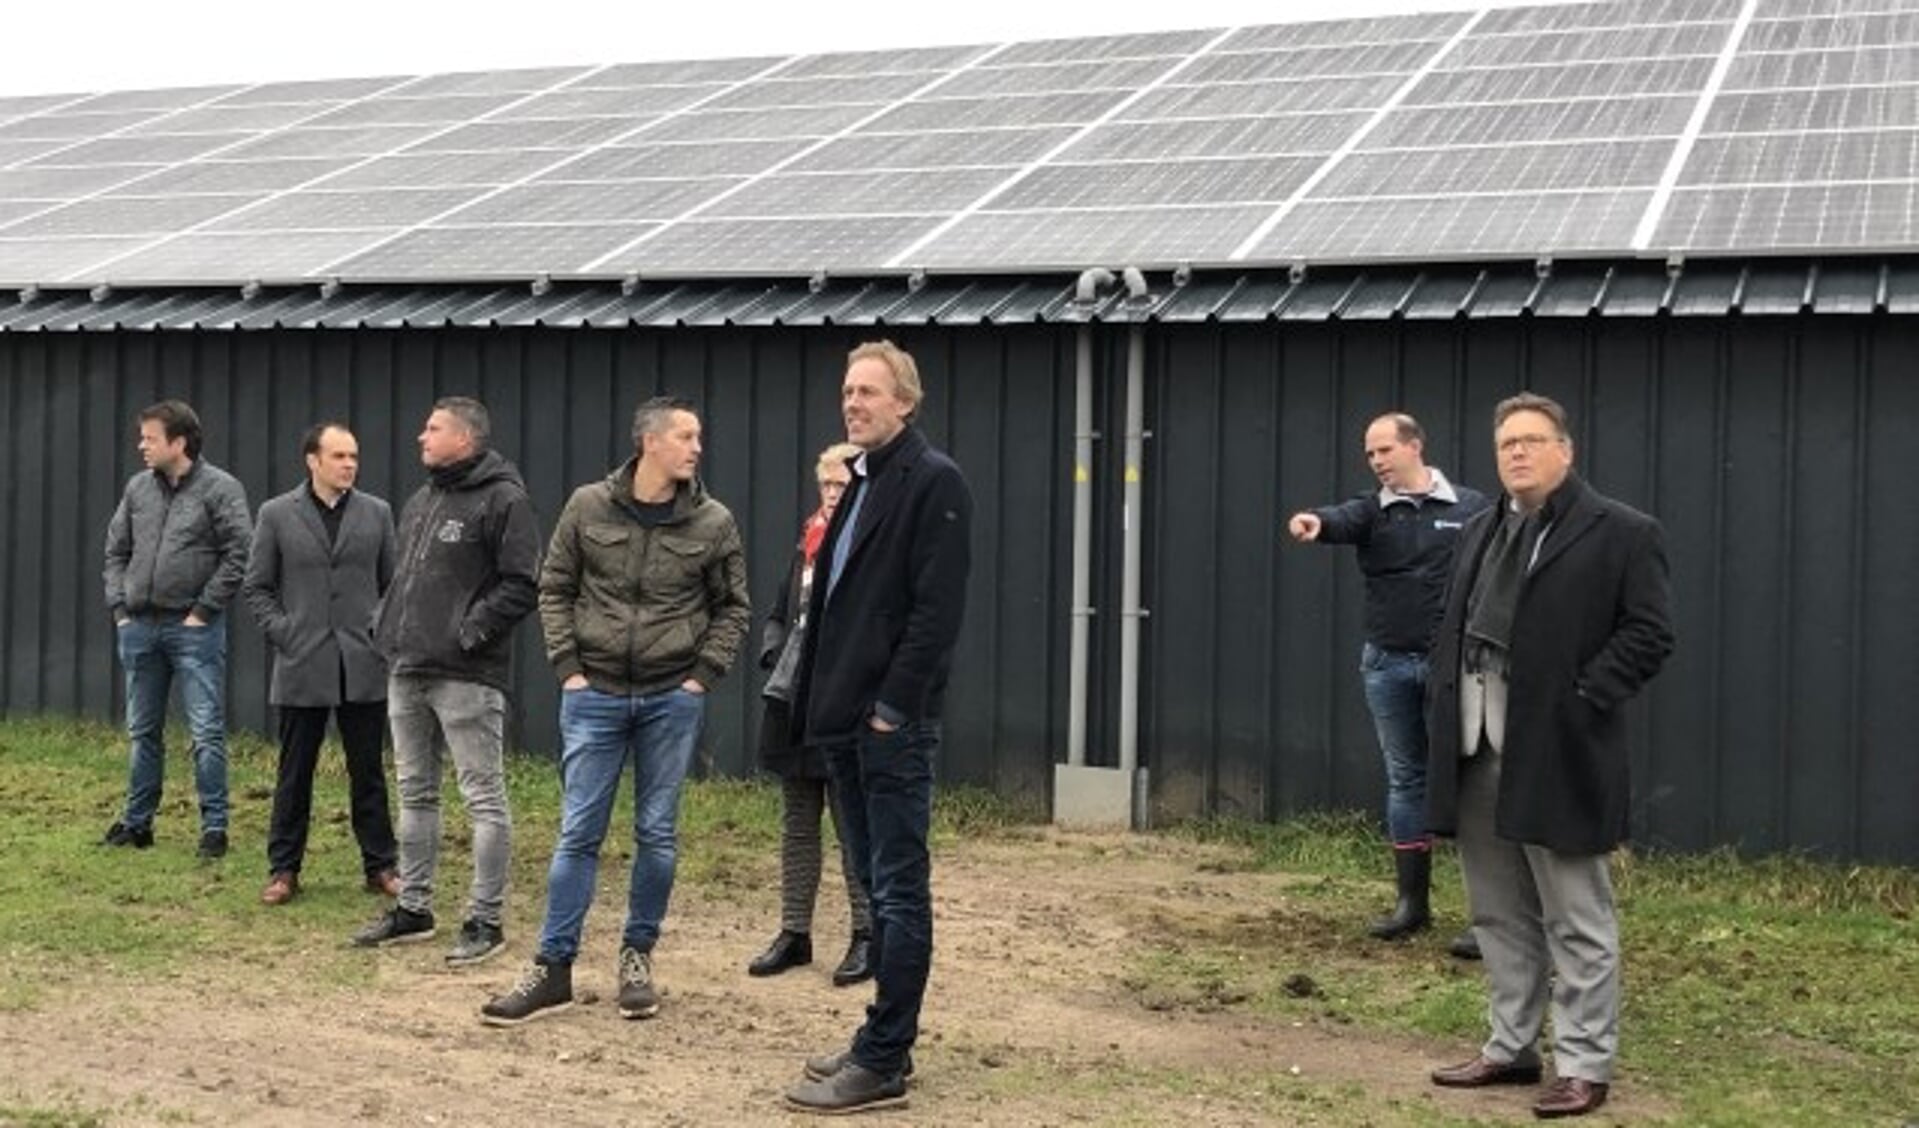 Uitleg over de werking van de zonnepanelen met uiterst rechts wethouder Leo van der Velden. (foto: Wijnand Kooijmans)